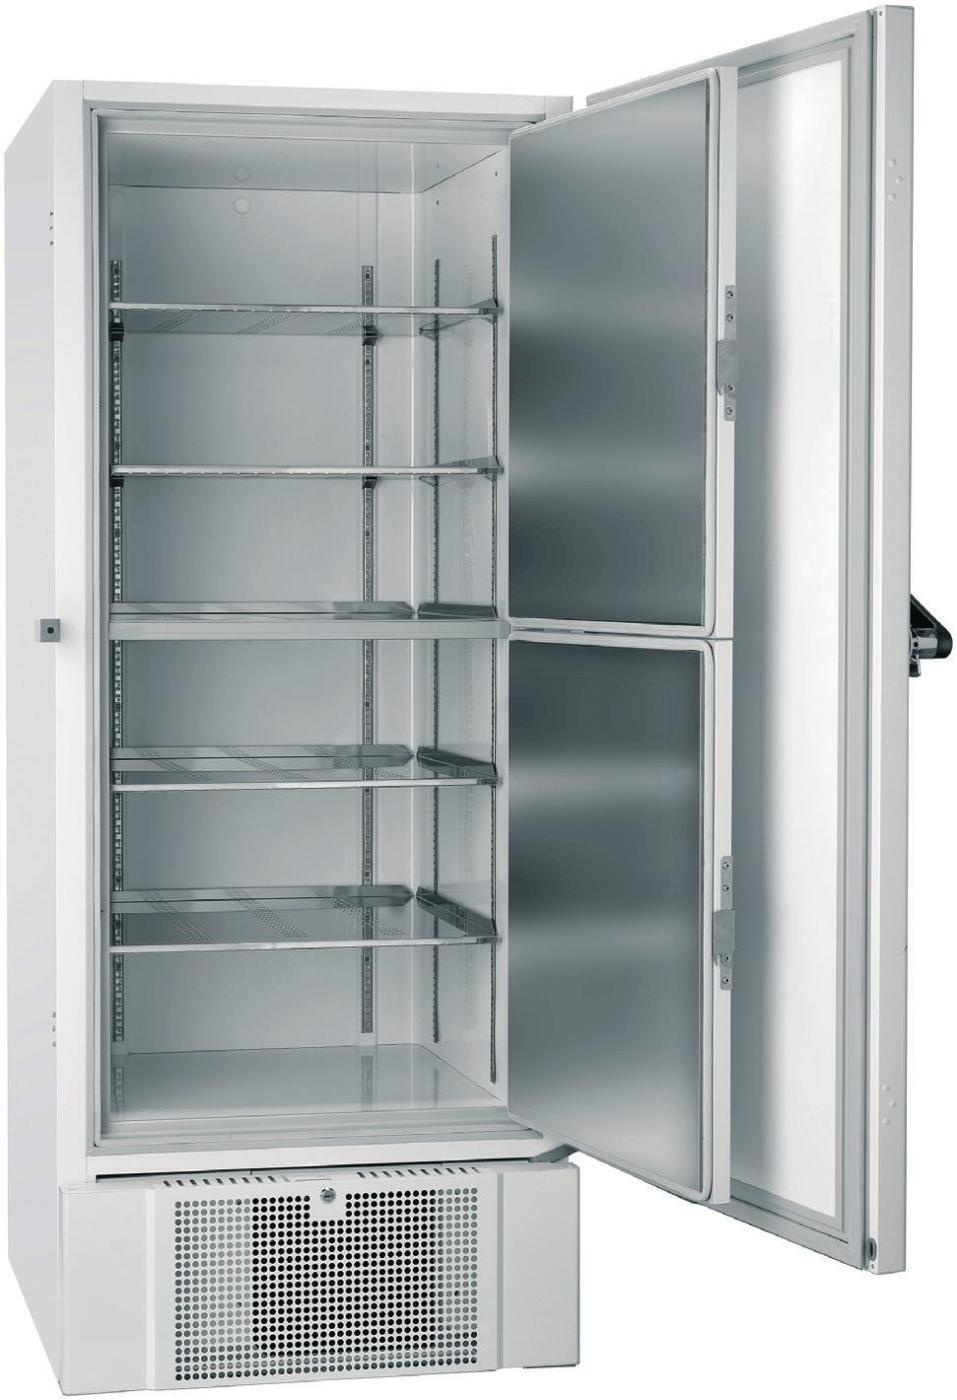 丹麦GRAM超低温冰箱BioUltra UL570的图片